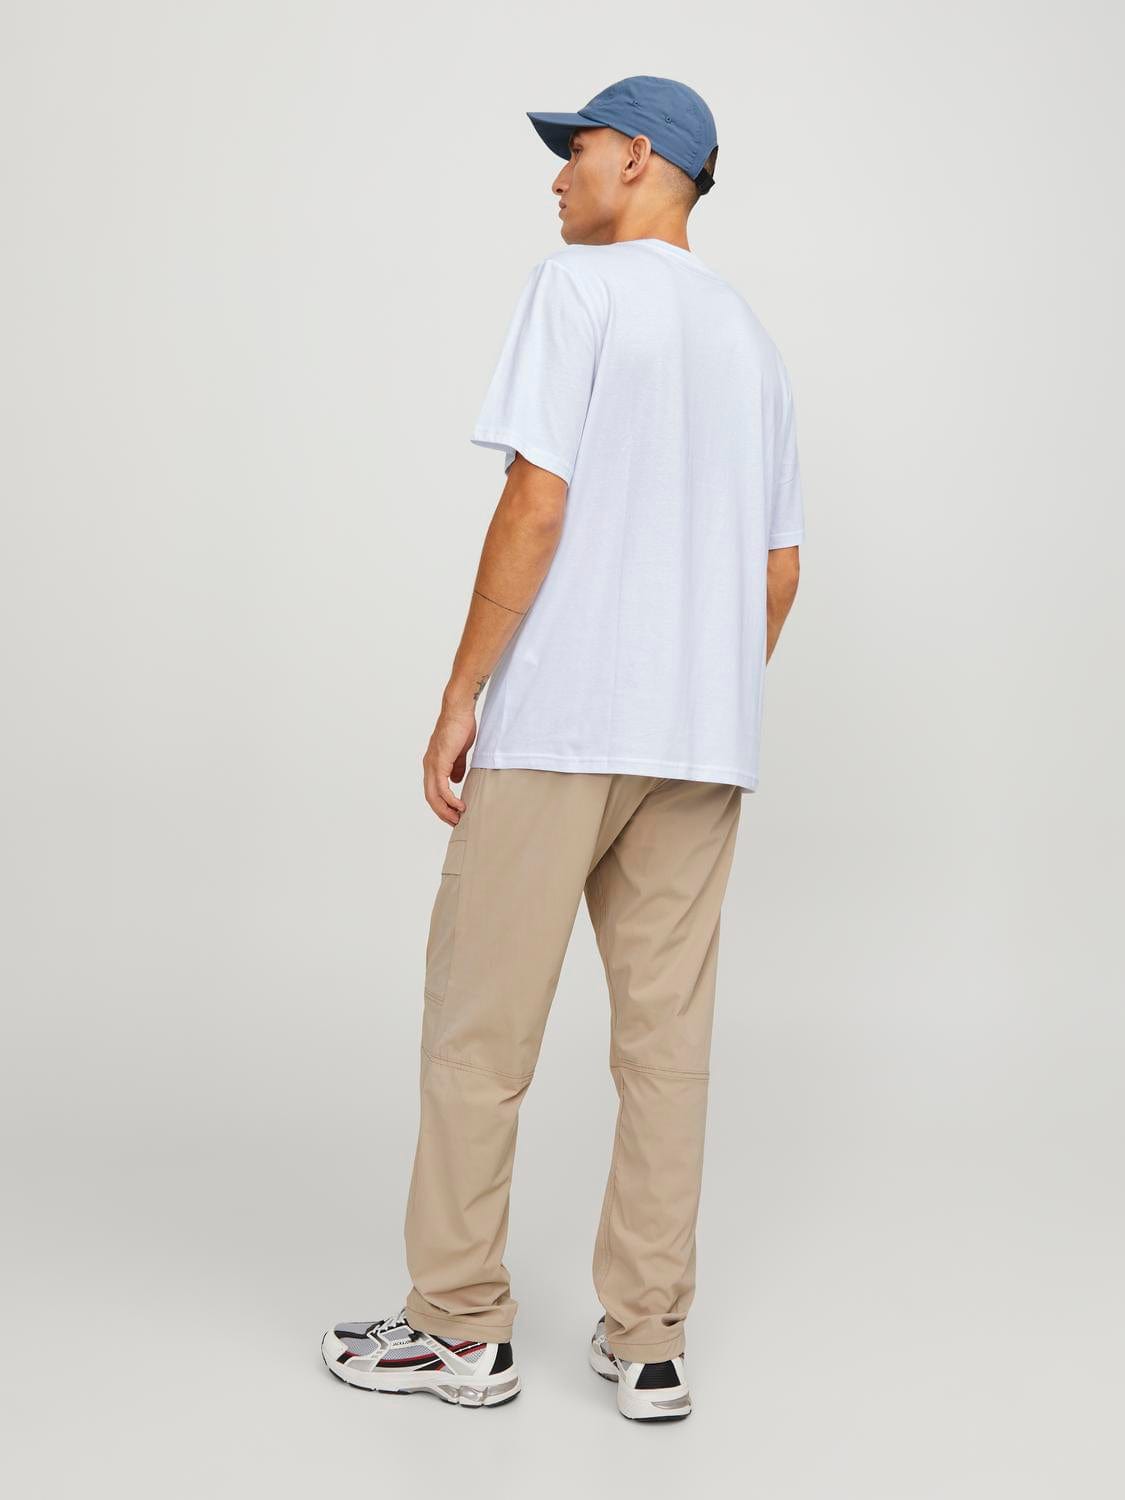 Camiseta manga corta con logo blanca -JCOLOGAN